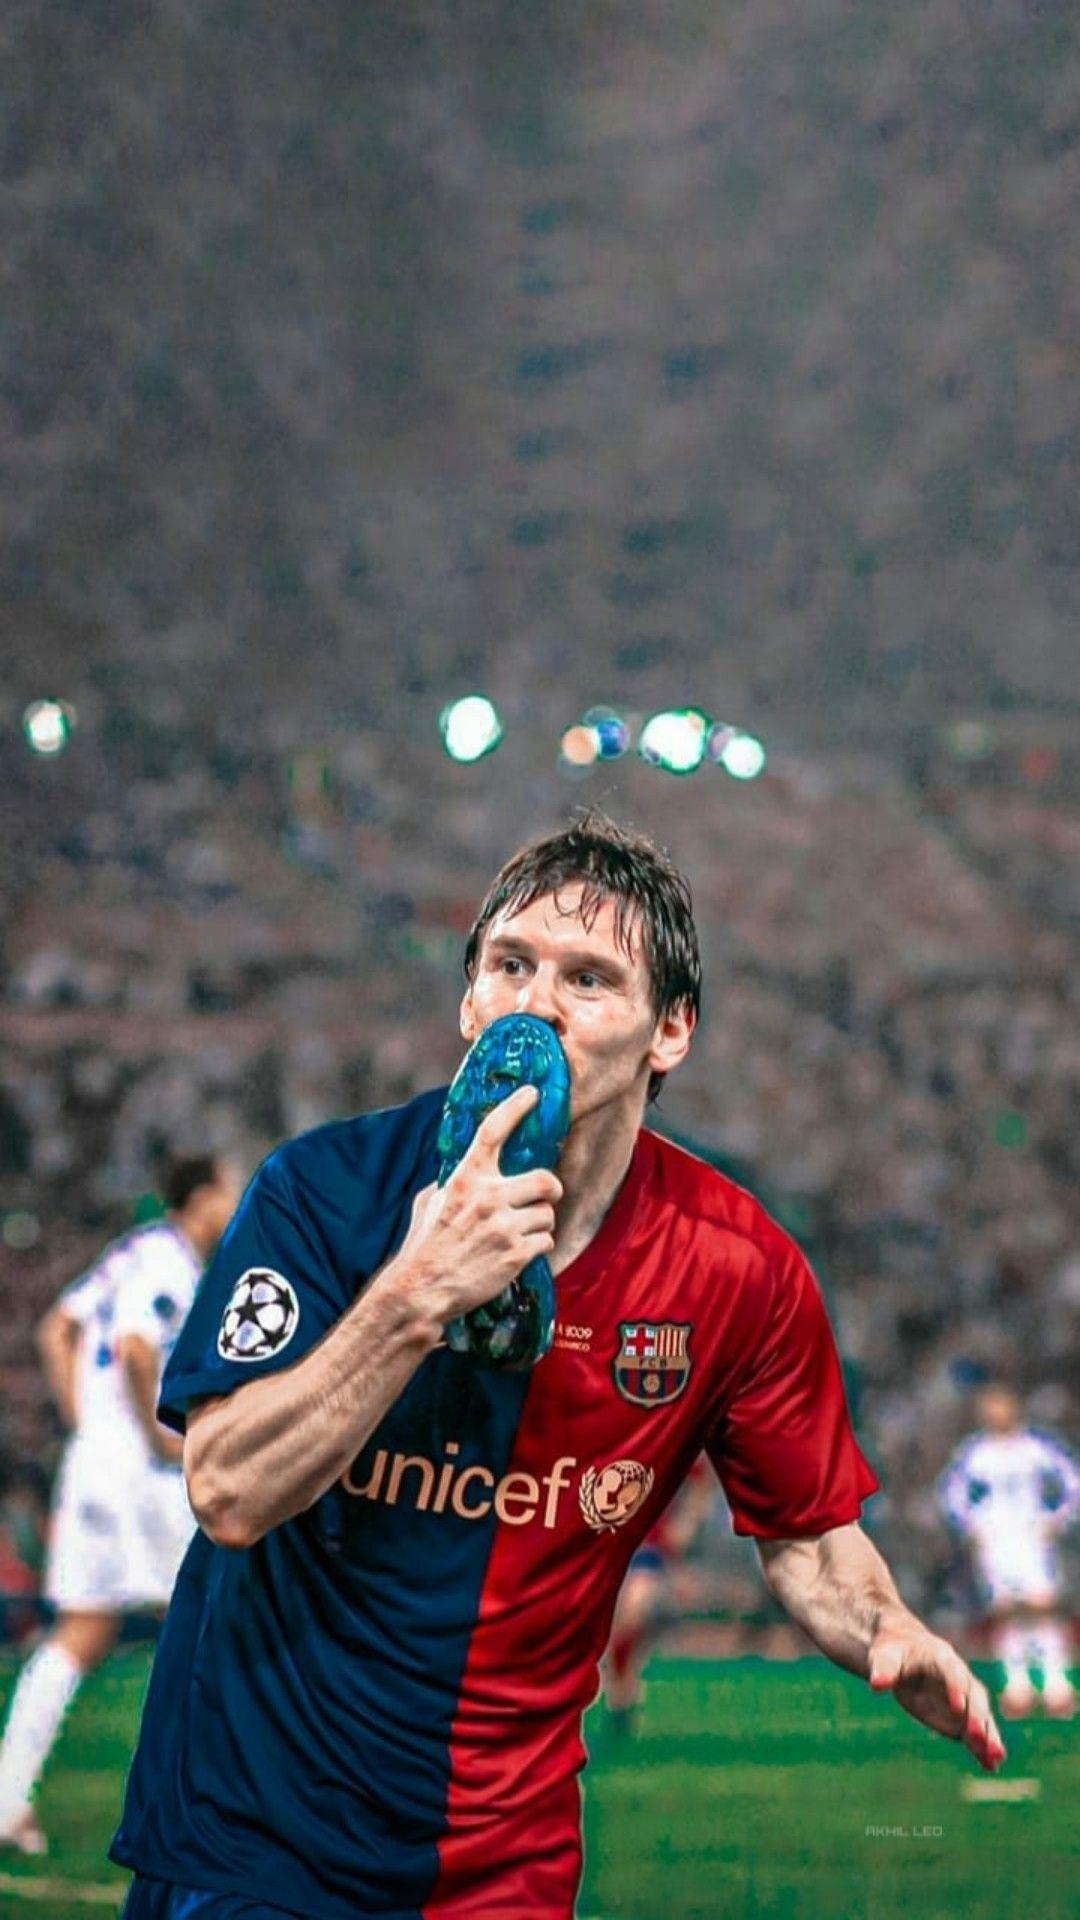 Vào năm 2009, Lionel Messi đã mang về cho Barcelona danh hiệu Champions League một cách chóng vánh. Hãy ngắm nhìn vẻ đẹp của anh trong những bức ảnh nền đơn giản và tinh tế, để tưởng nhớ khoảnh khắc đó mãi mãi.